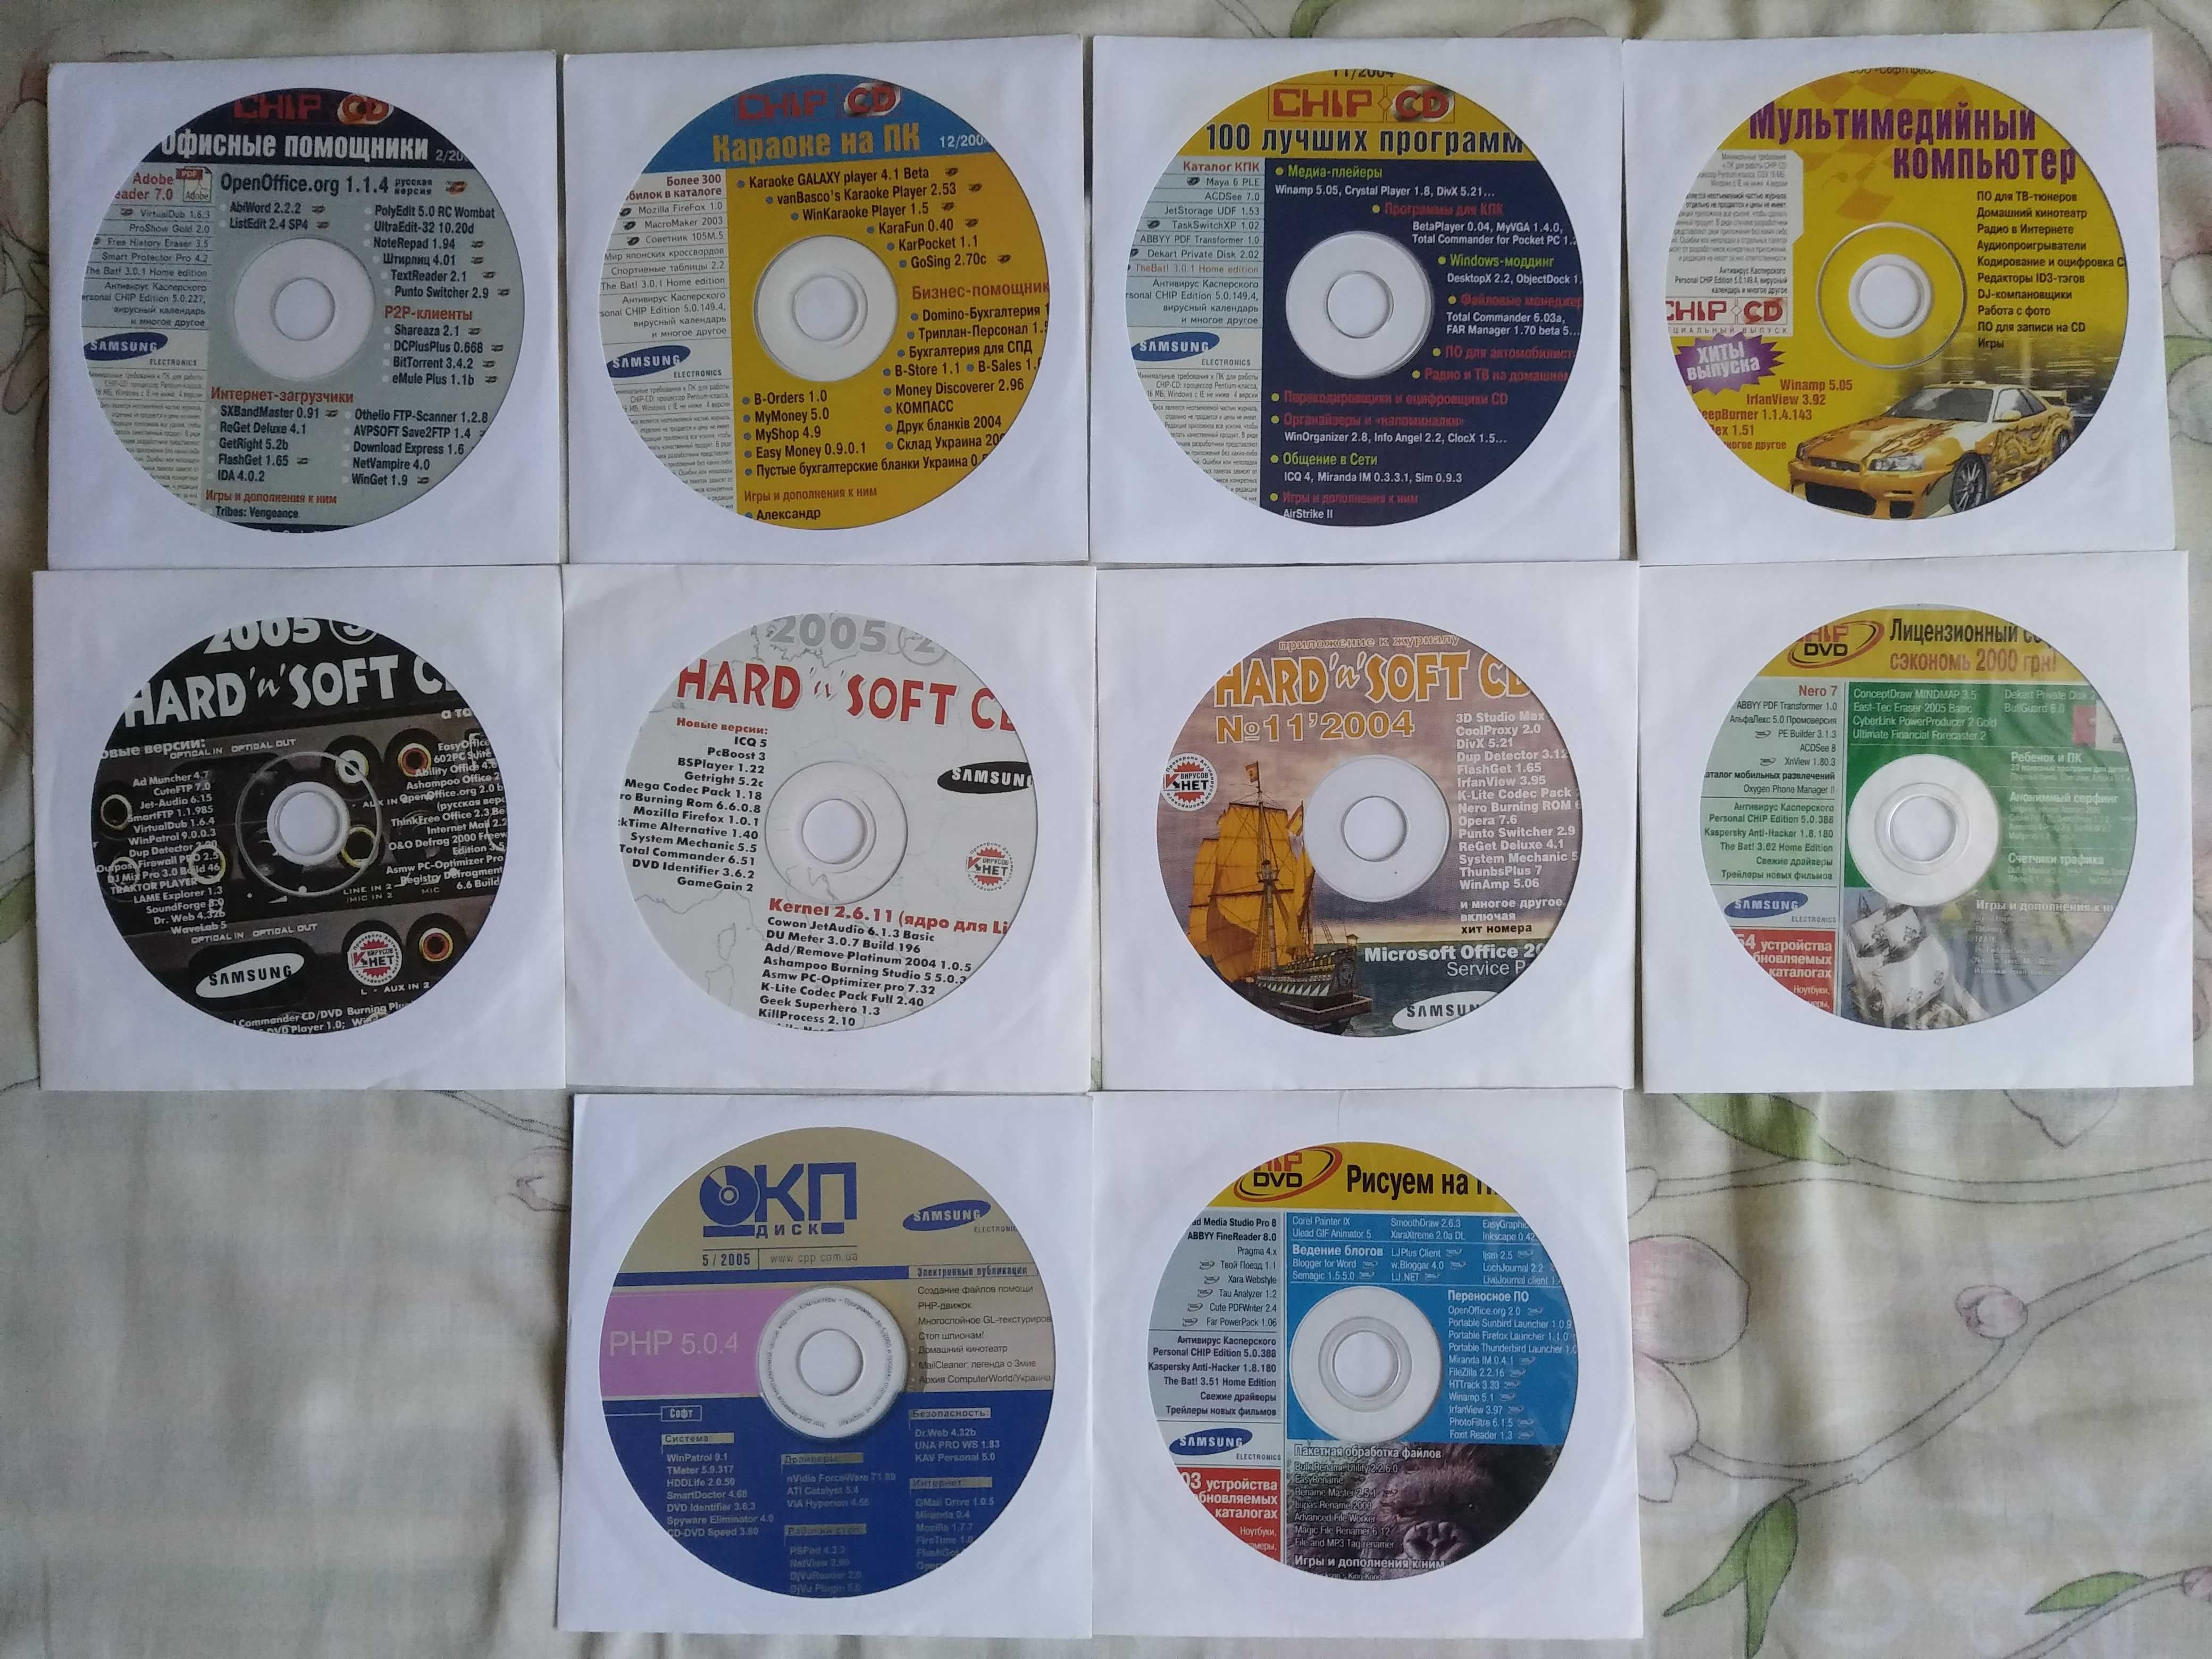 Підбірка журналів про компютери 2004-2005 рік + CD/DVD